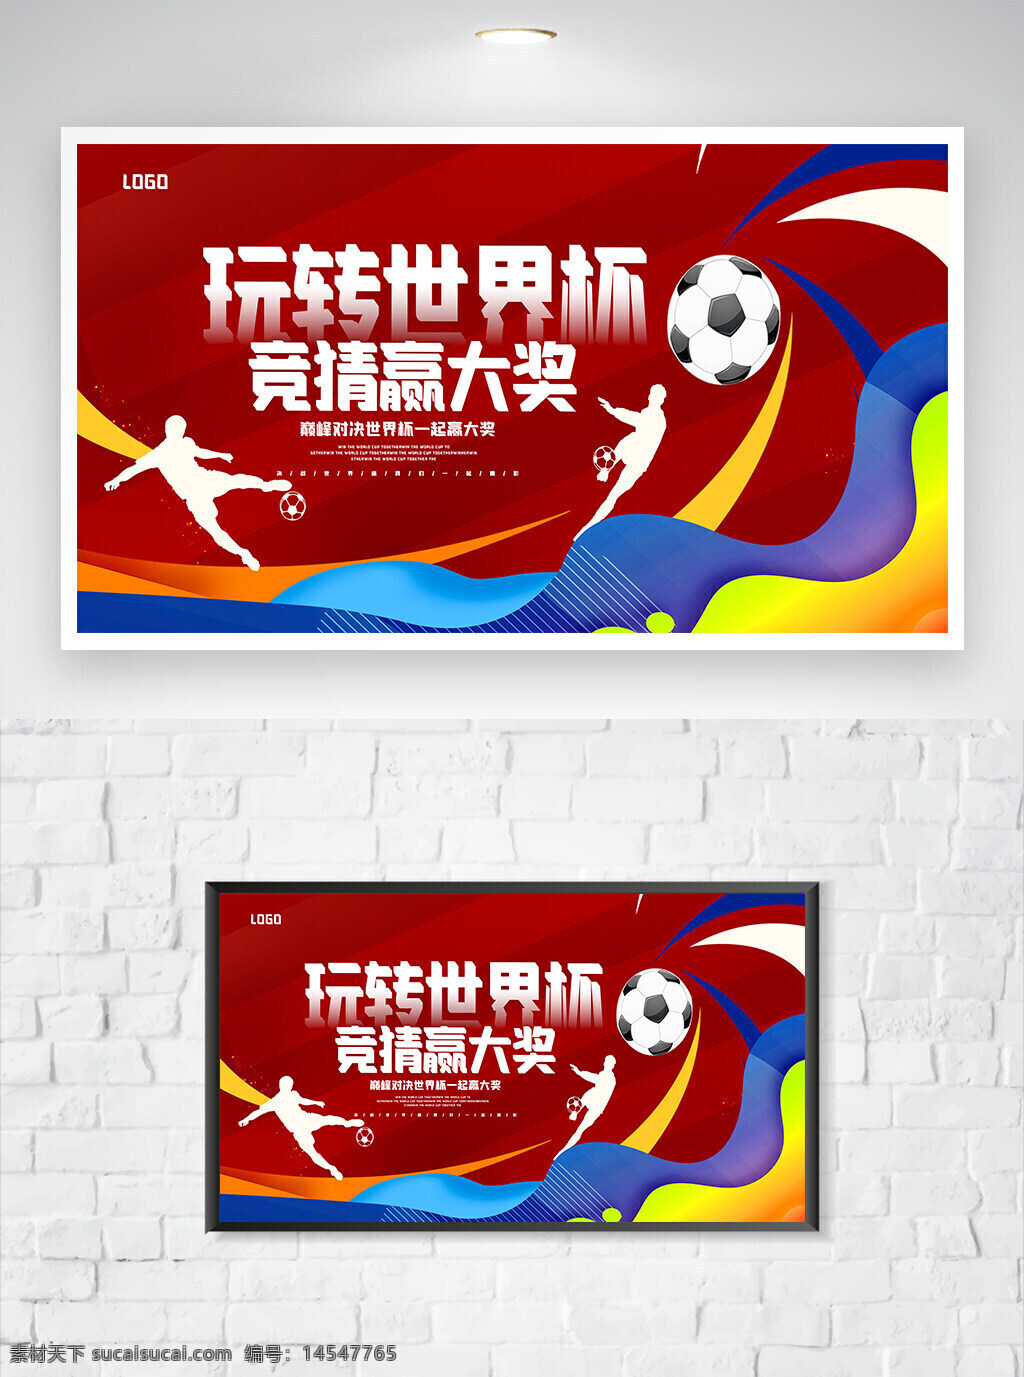 世界杯 世界杯宣传 世界杯海报 世界杯活动 2022世界杯 卡塔尔世界杯 2022卡塔尔世界杯 活动宣传 活动海报 宣传海报 海报